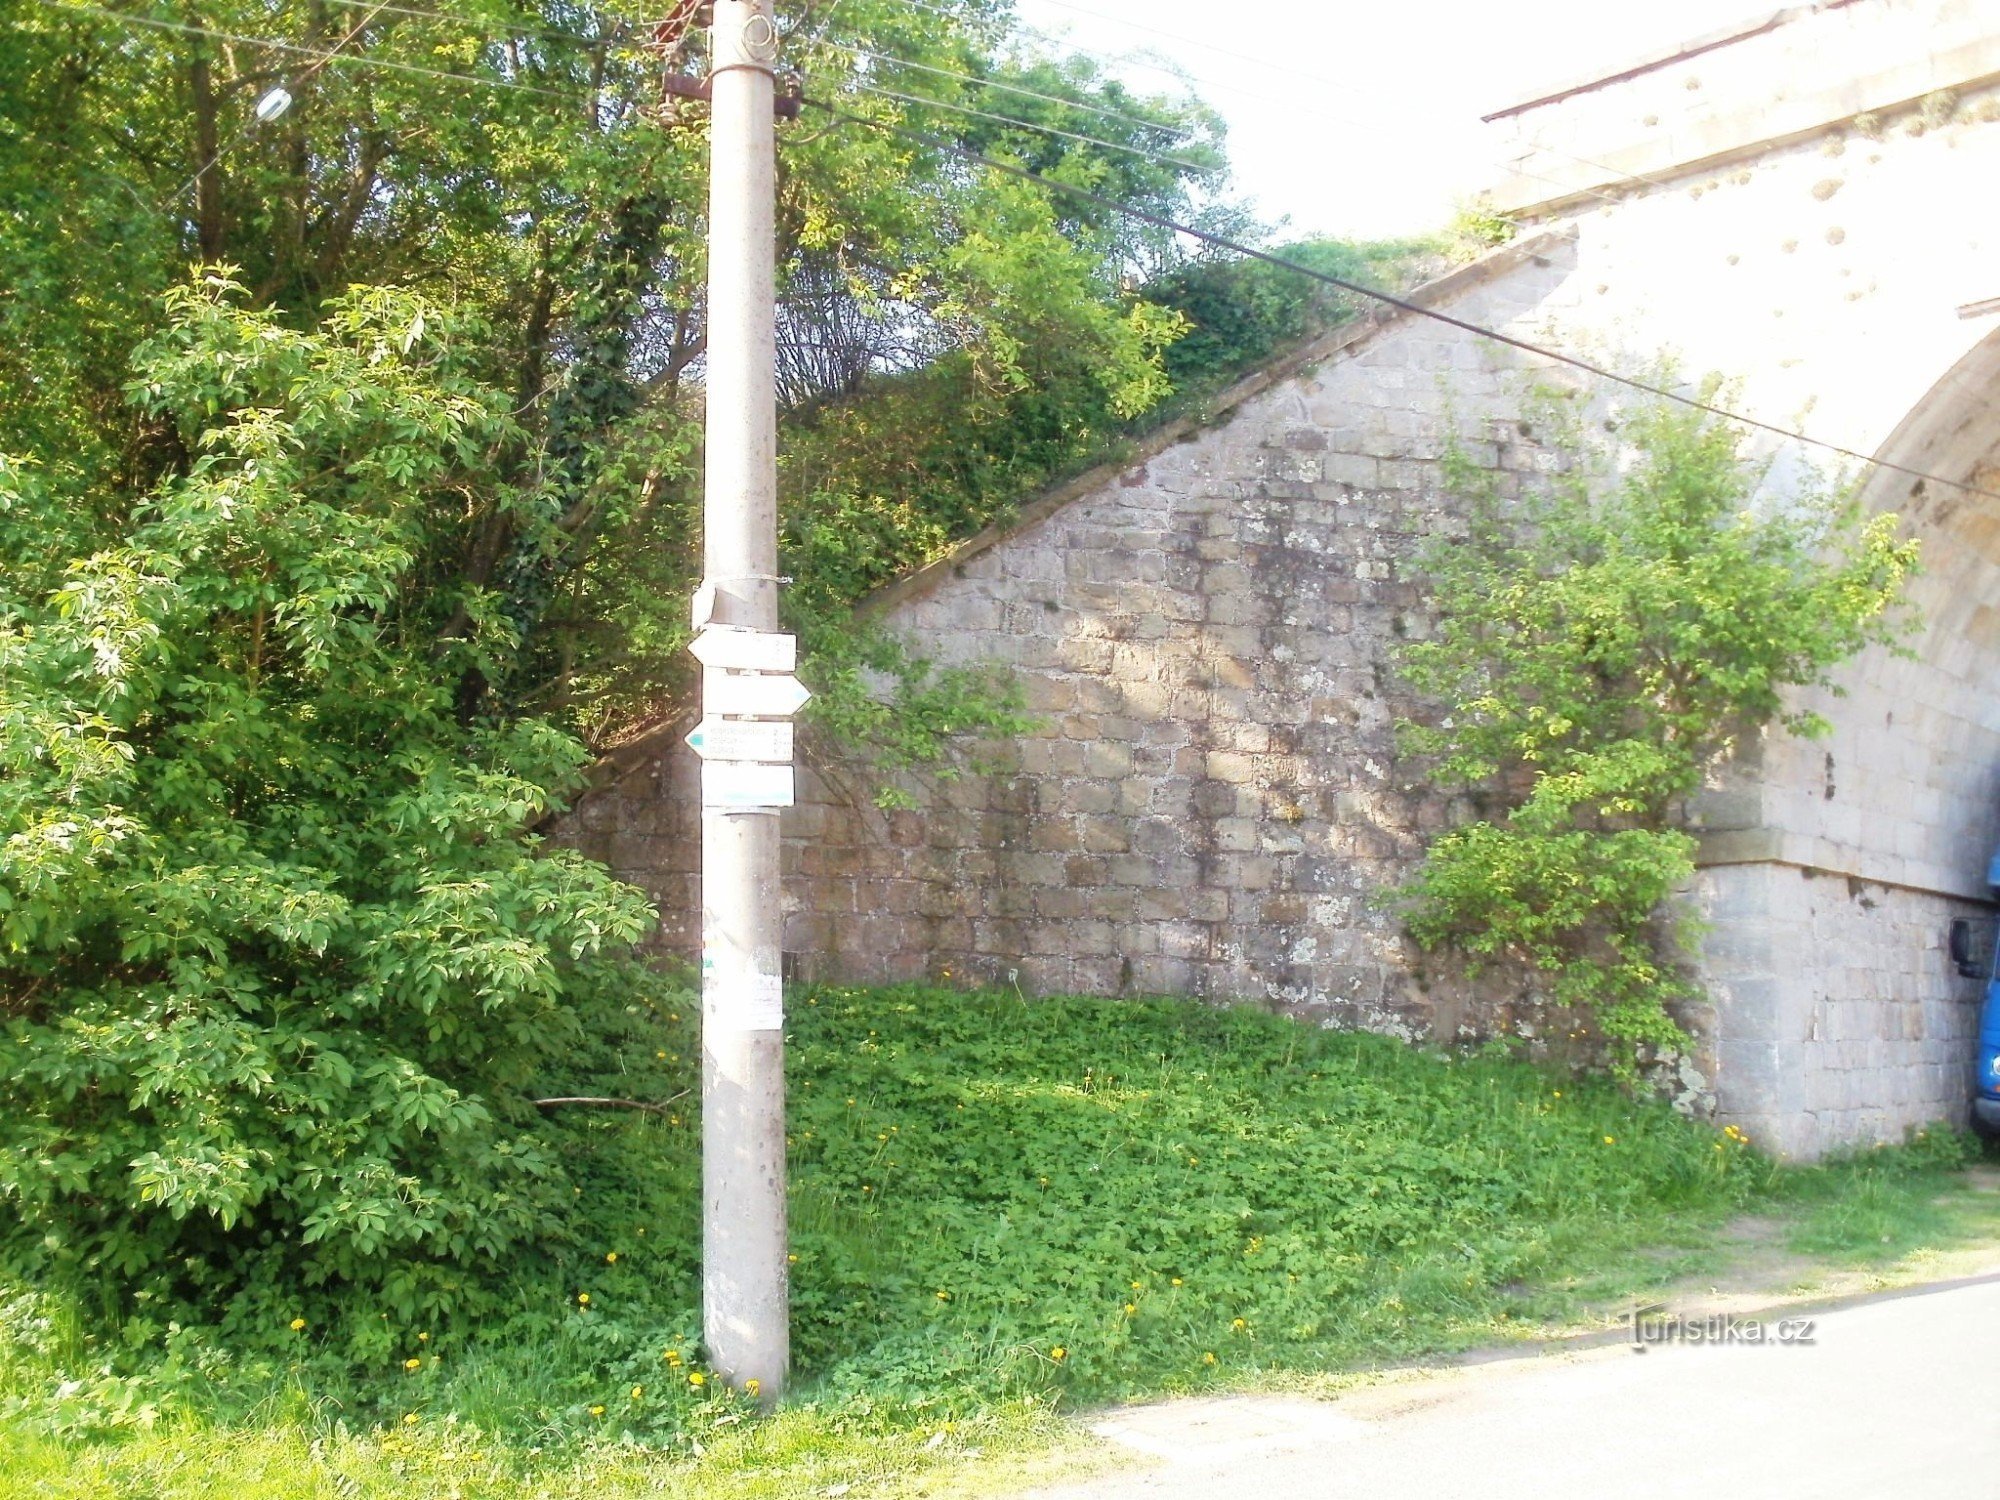 encrucijada turística Bílá Třemešná - cerca del puente ferroviario